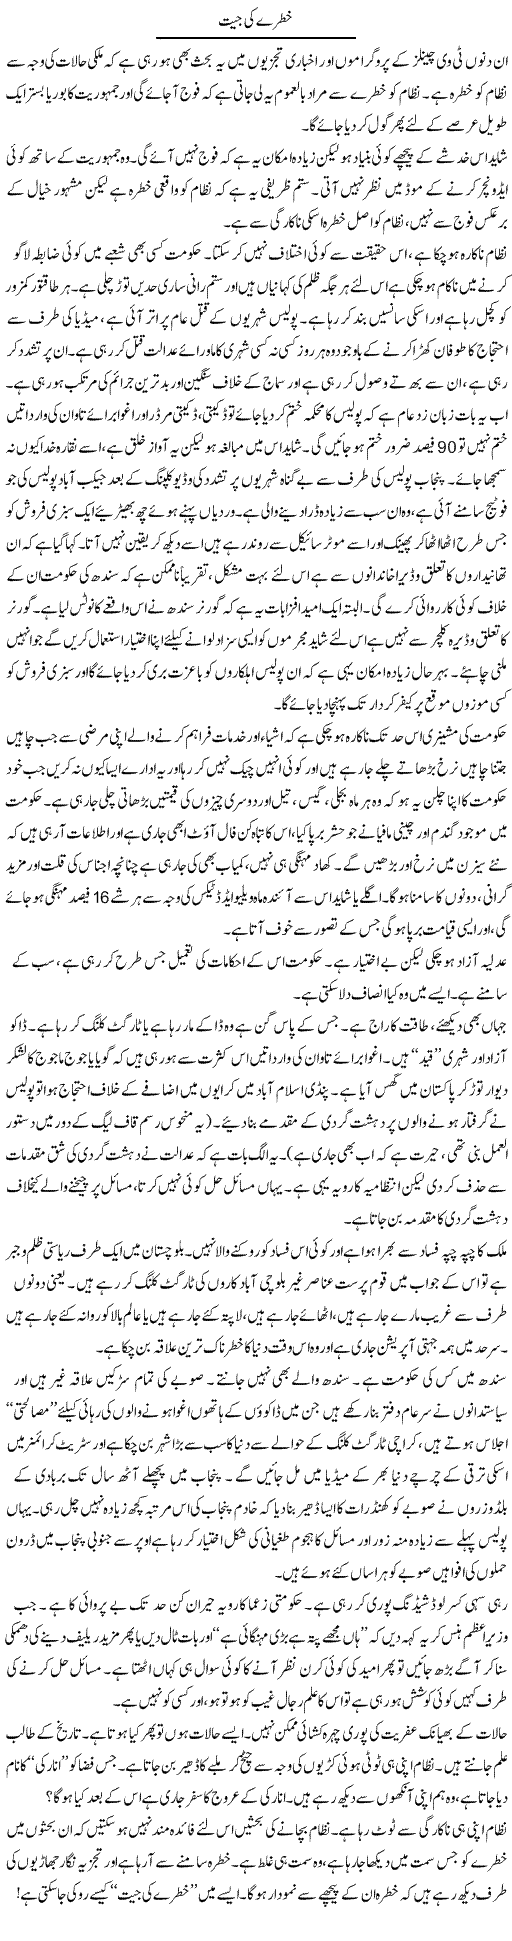 Khatre ki jeet Express Column Abdullah Tariq 23 March 2010